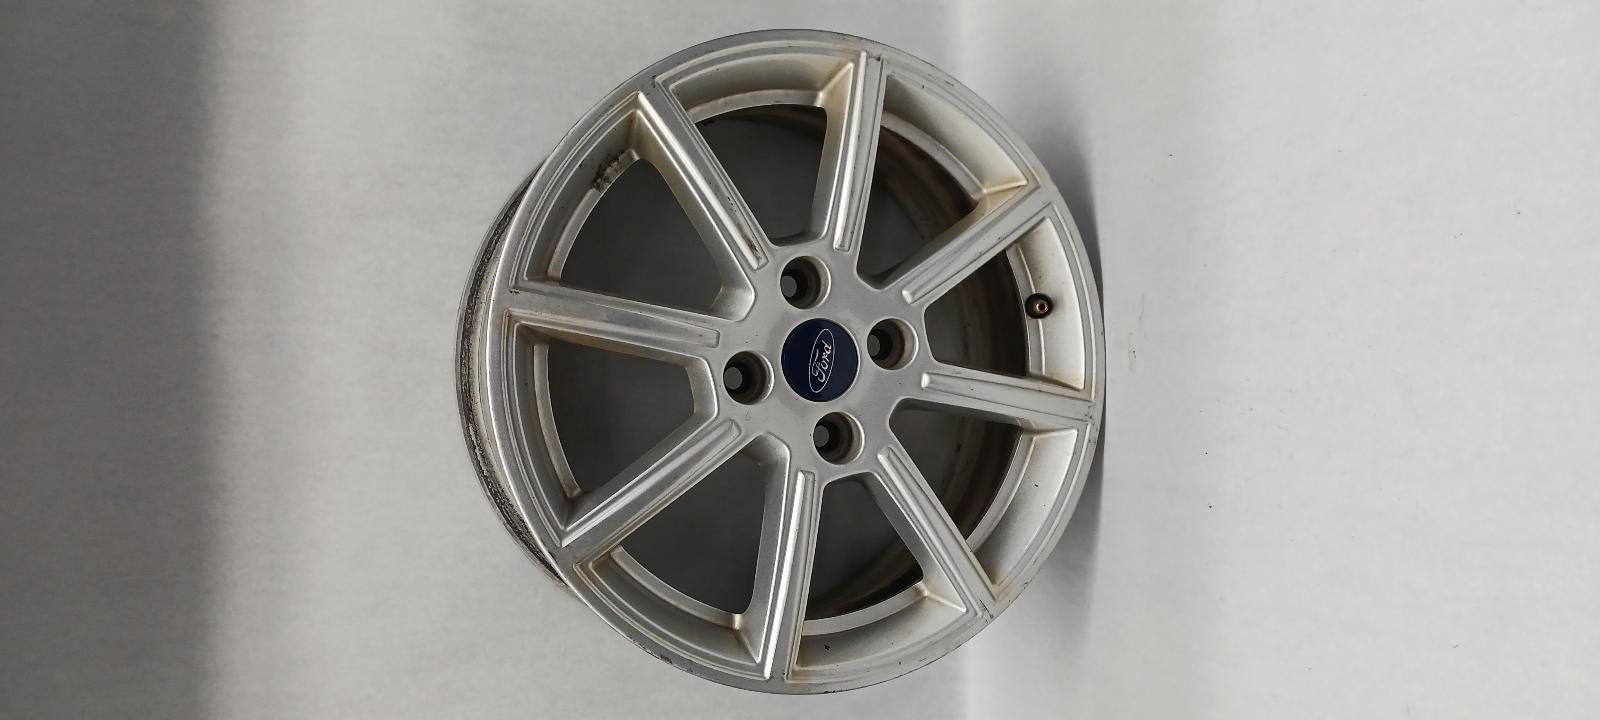 2019 FORD FIESTA Wheel 16x6-1/2 8 spoke silver OEM 14 15 16 17 18 19